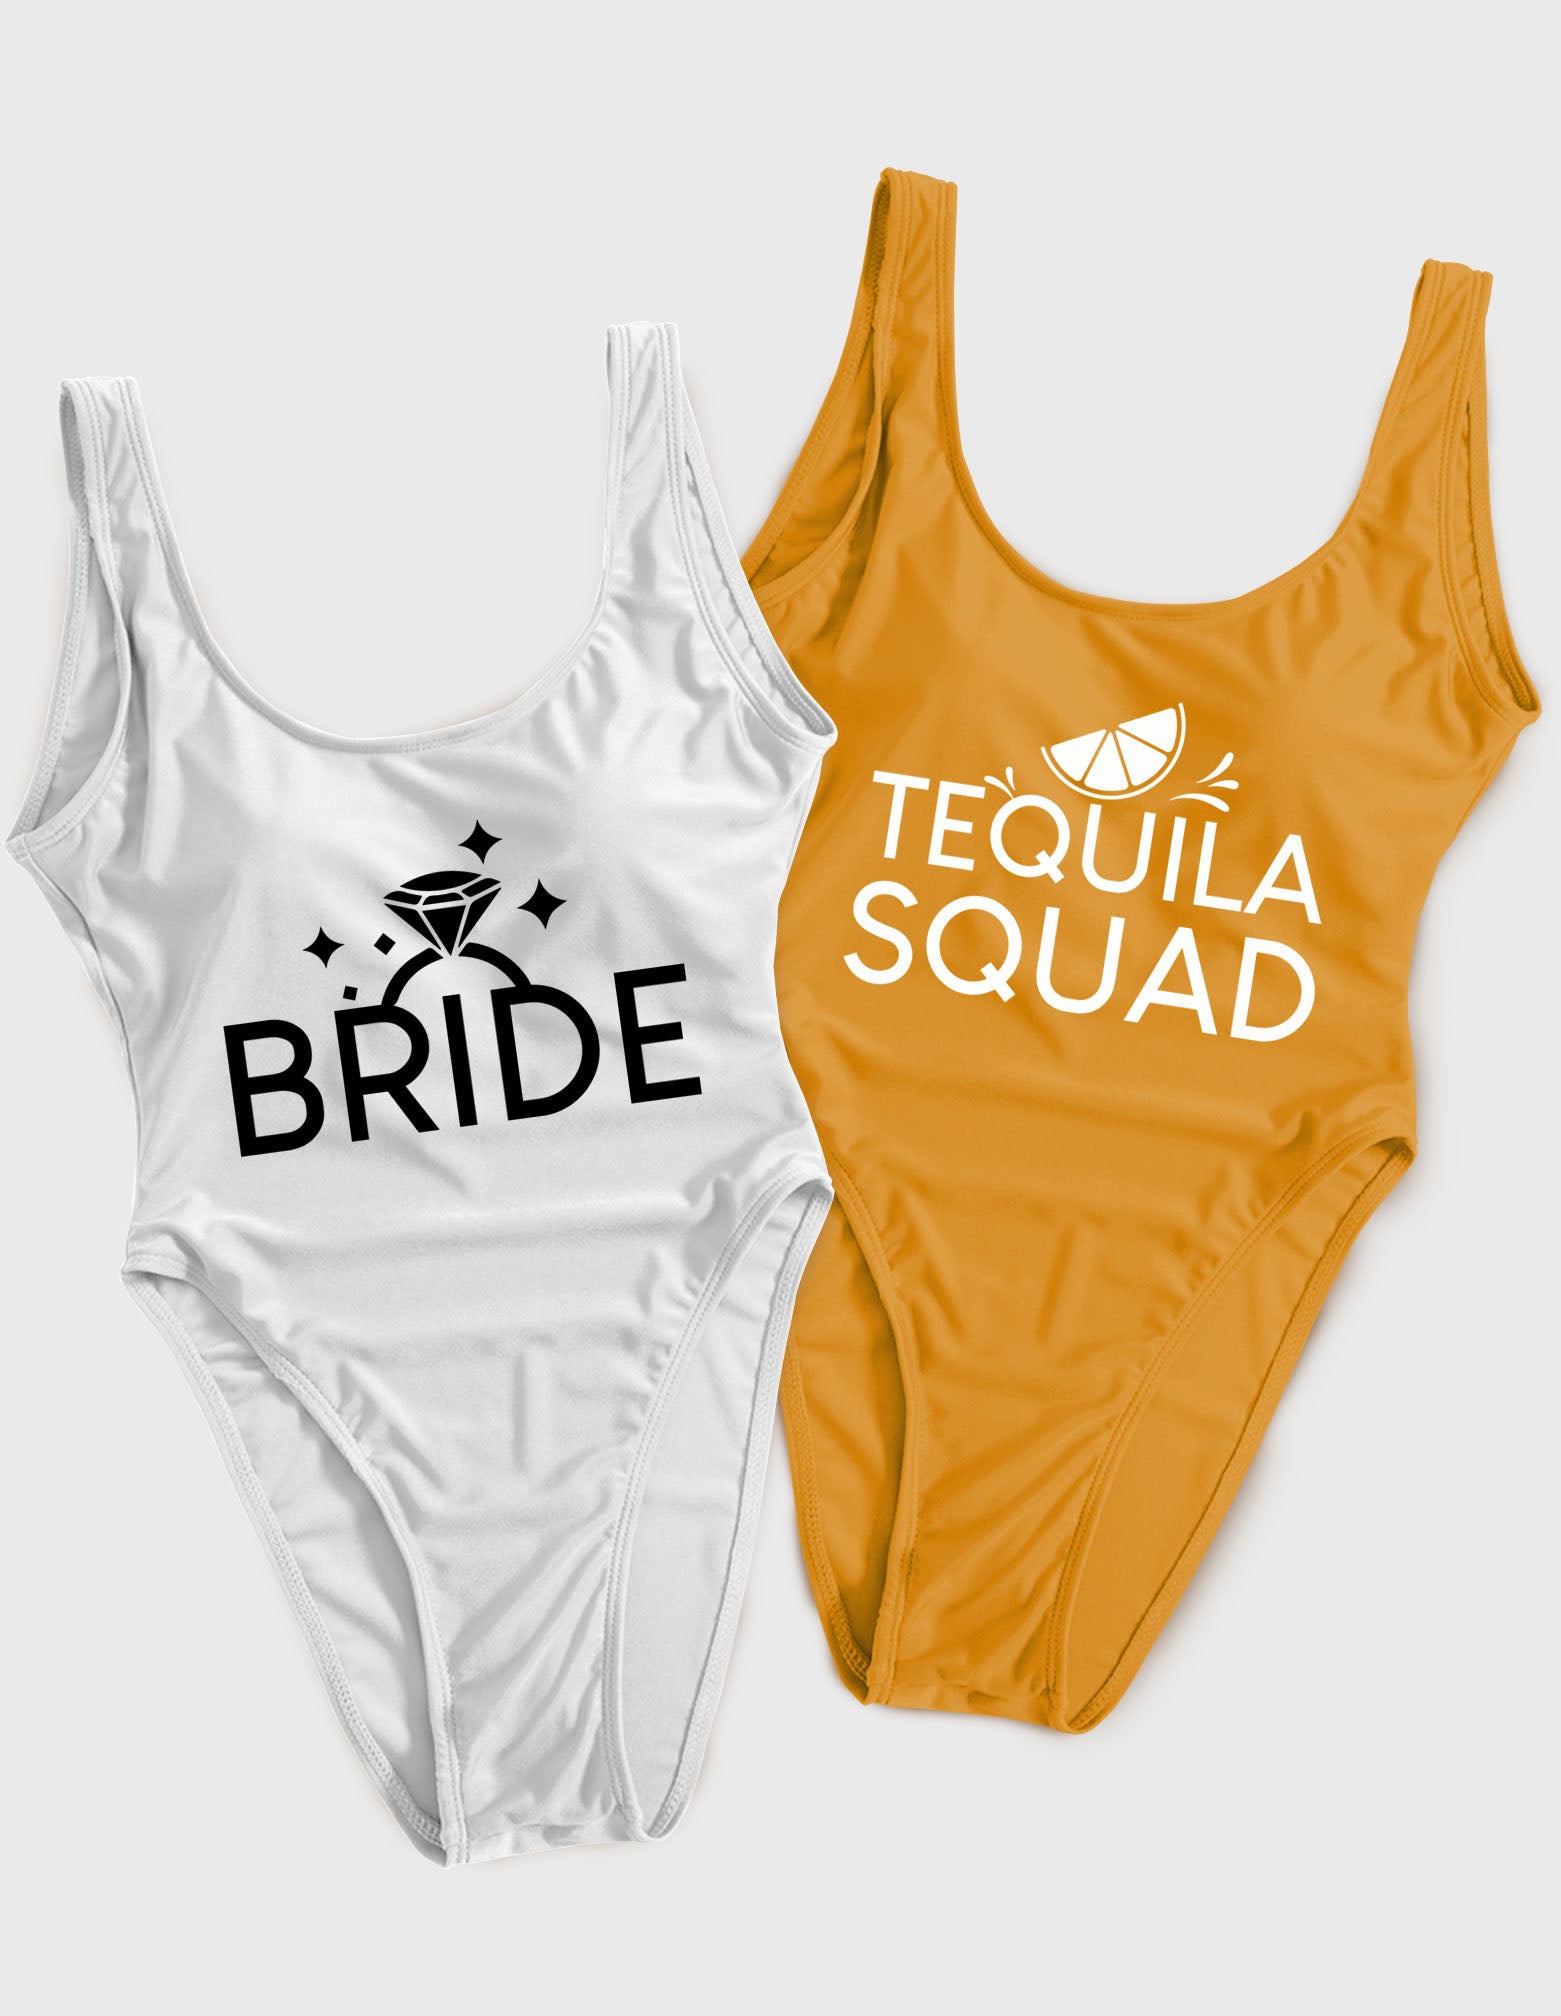 Bride - Tequila Squad  (74) Swimsuit